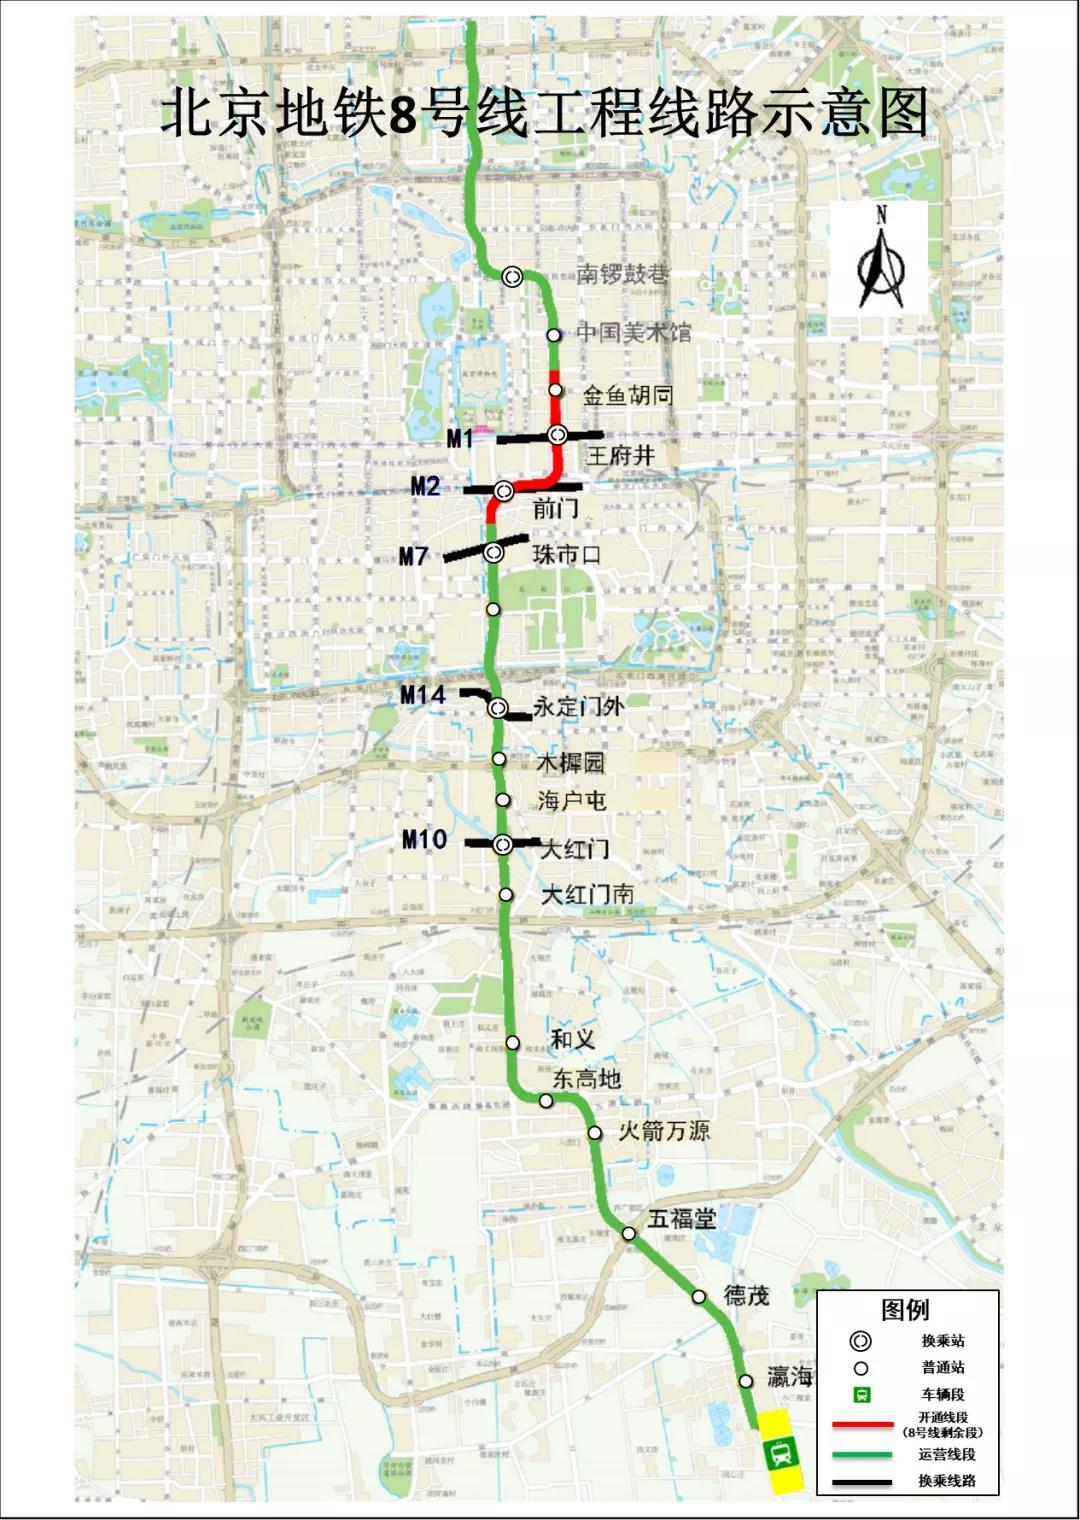 △北京地铁8号线工程线路示意图